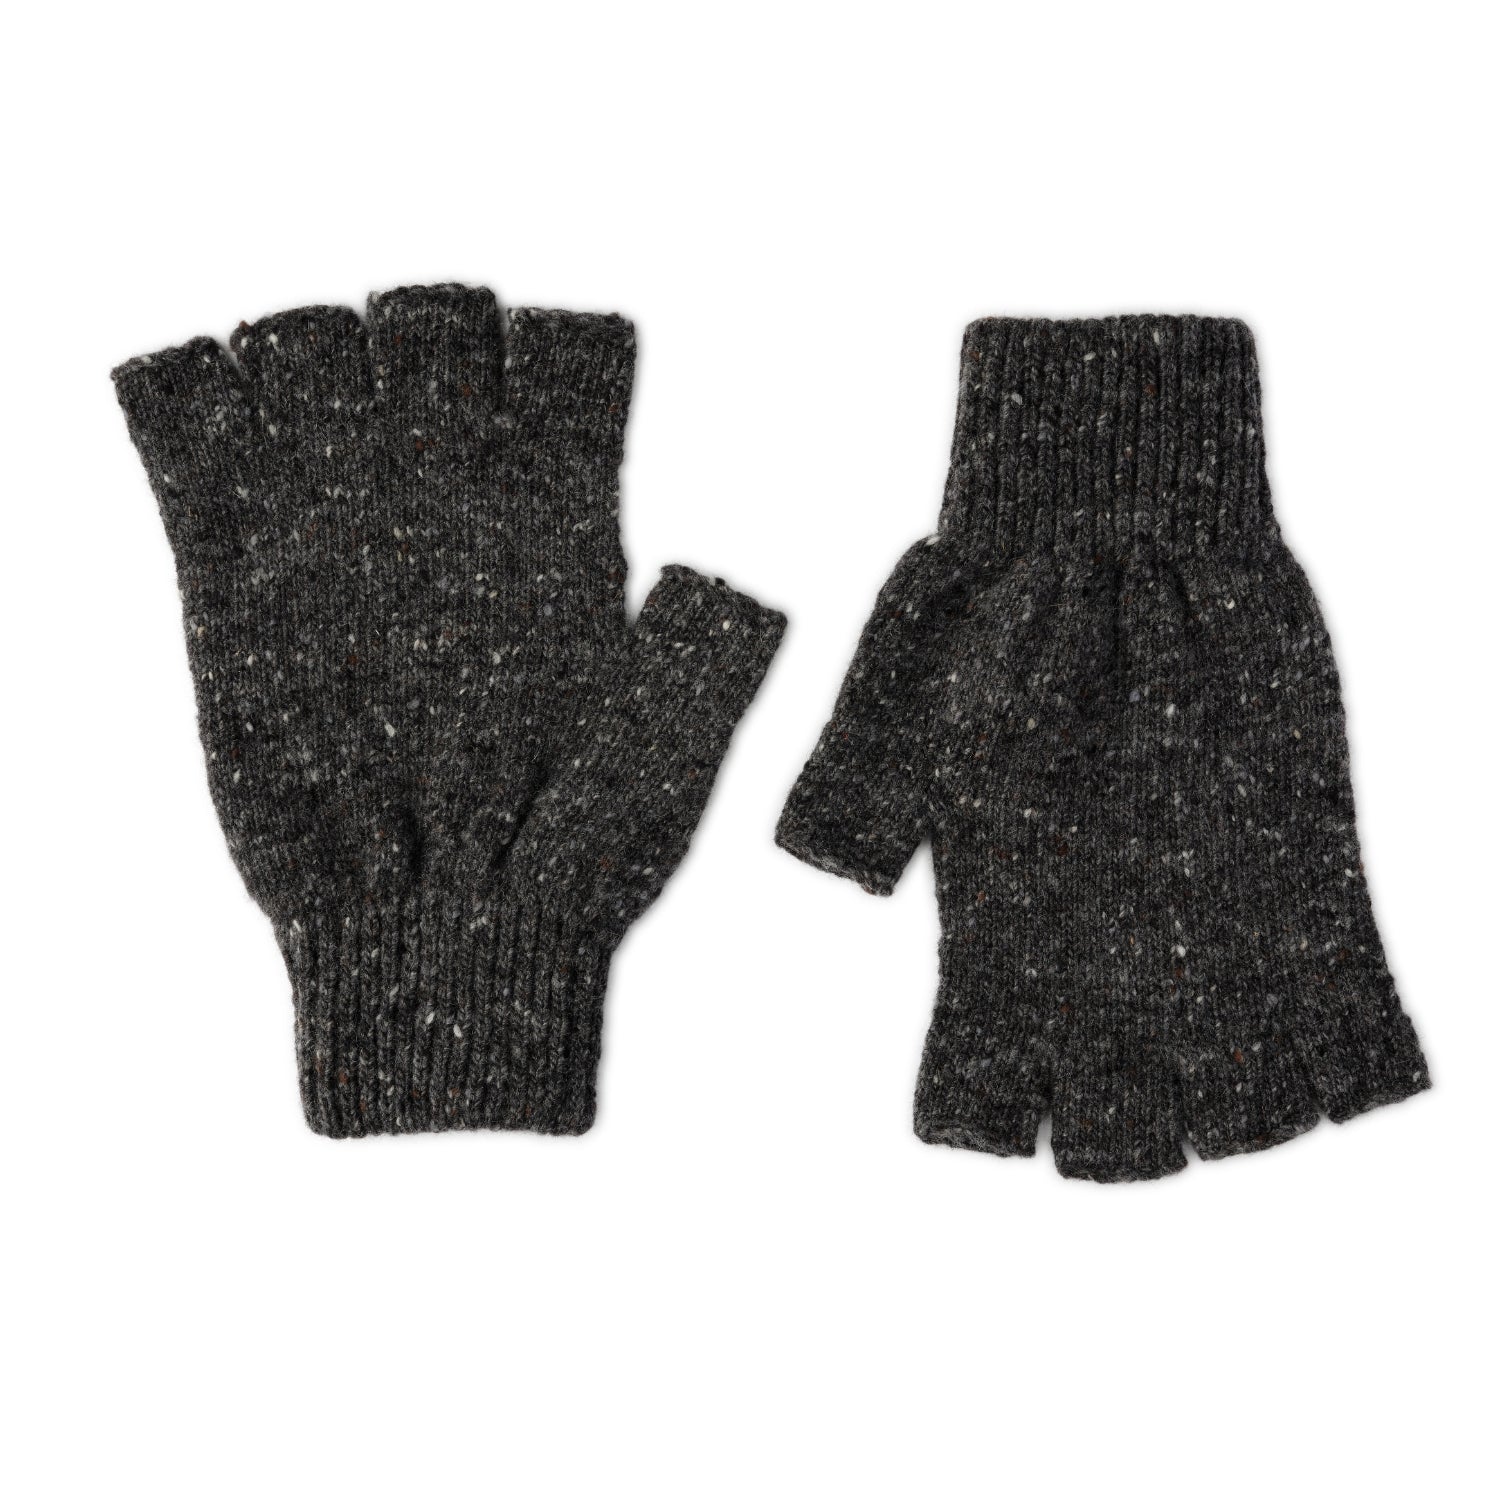 mens donegal wool grey fingerless gloves gift set